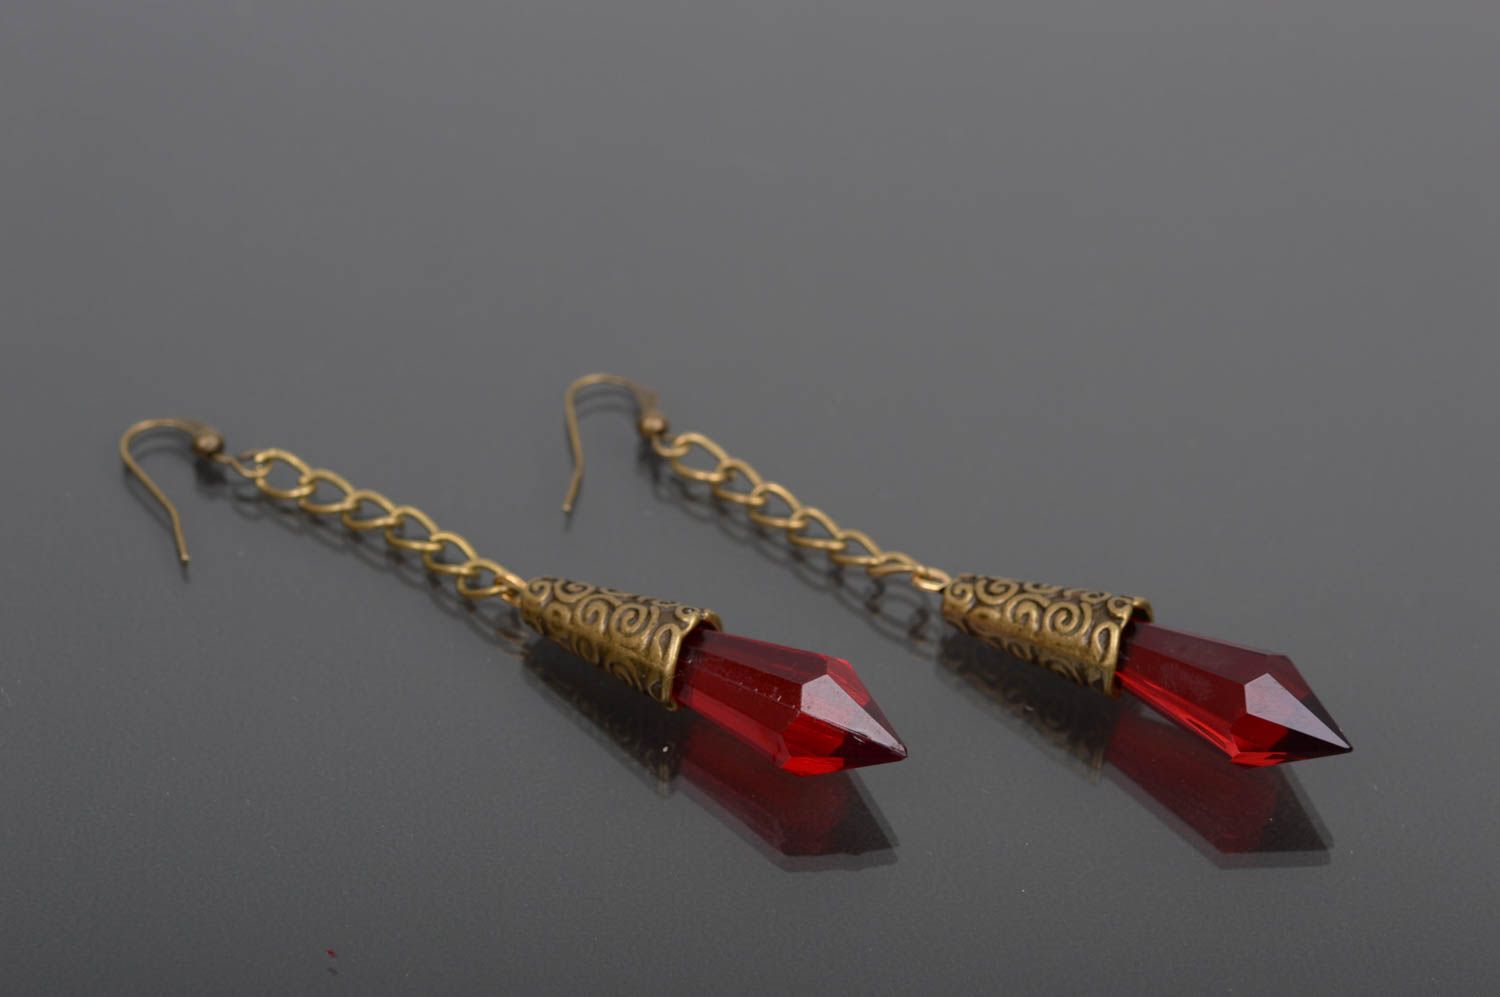 Long beaded earrings stylish handmade earrings female present gift for her photo 1